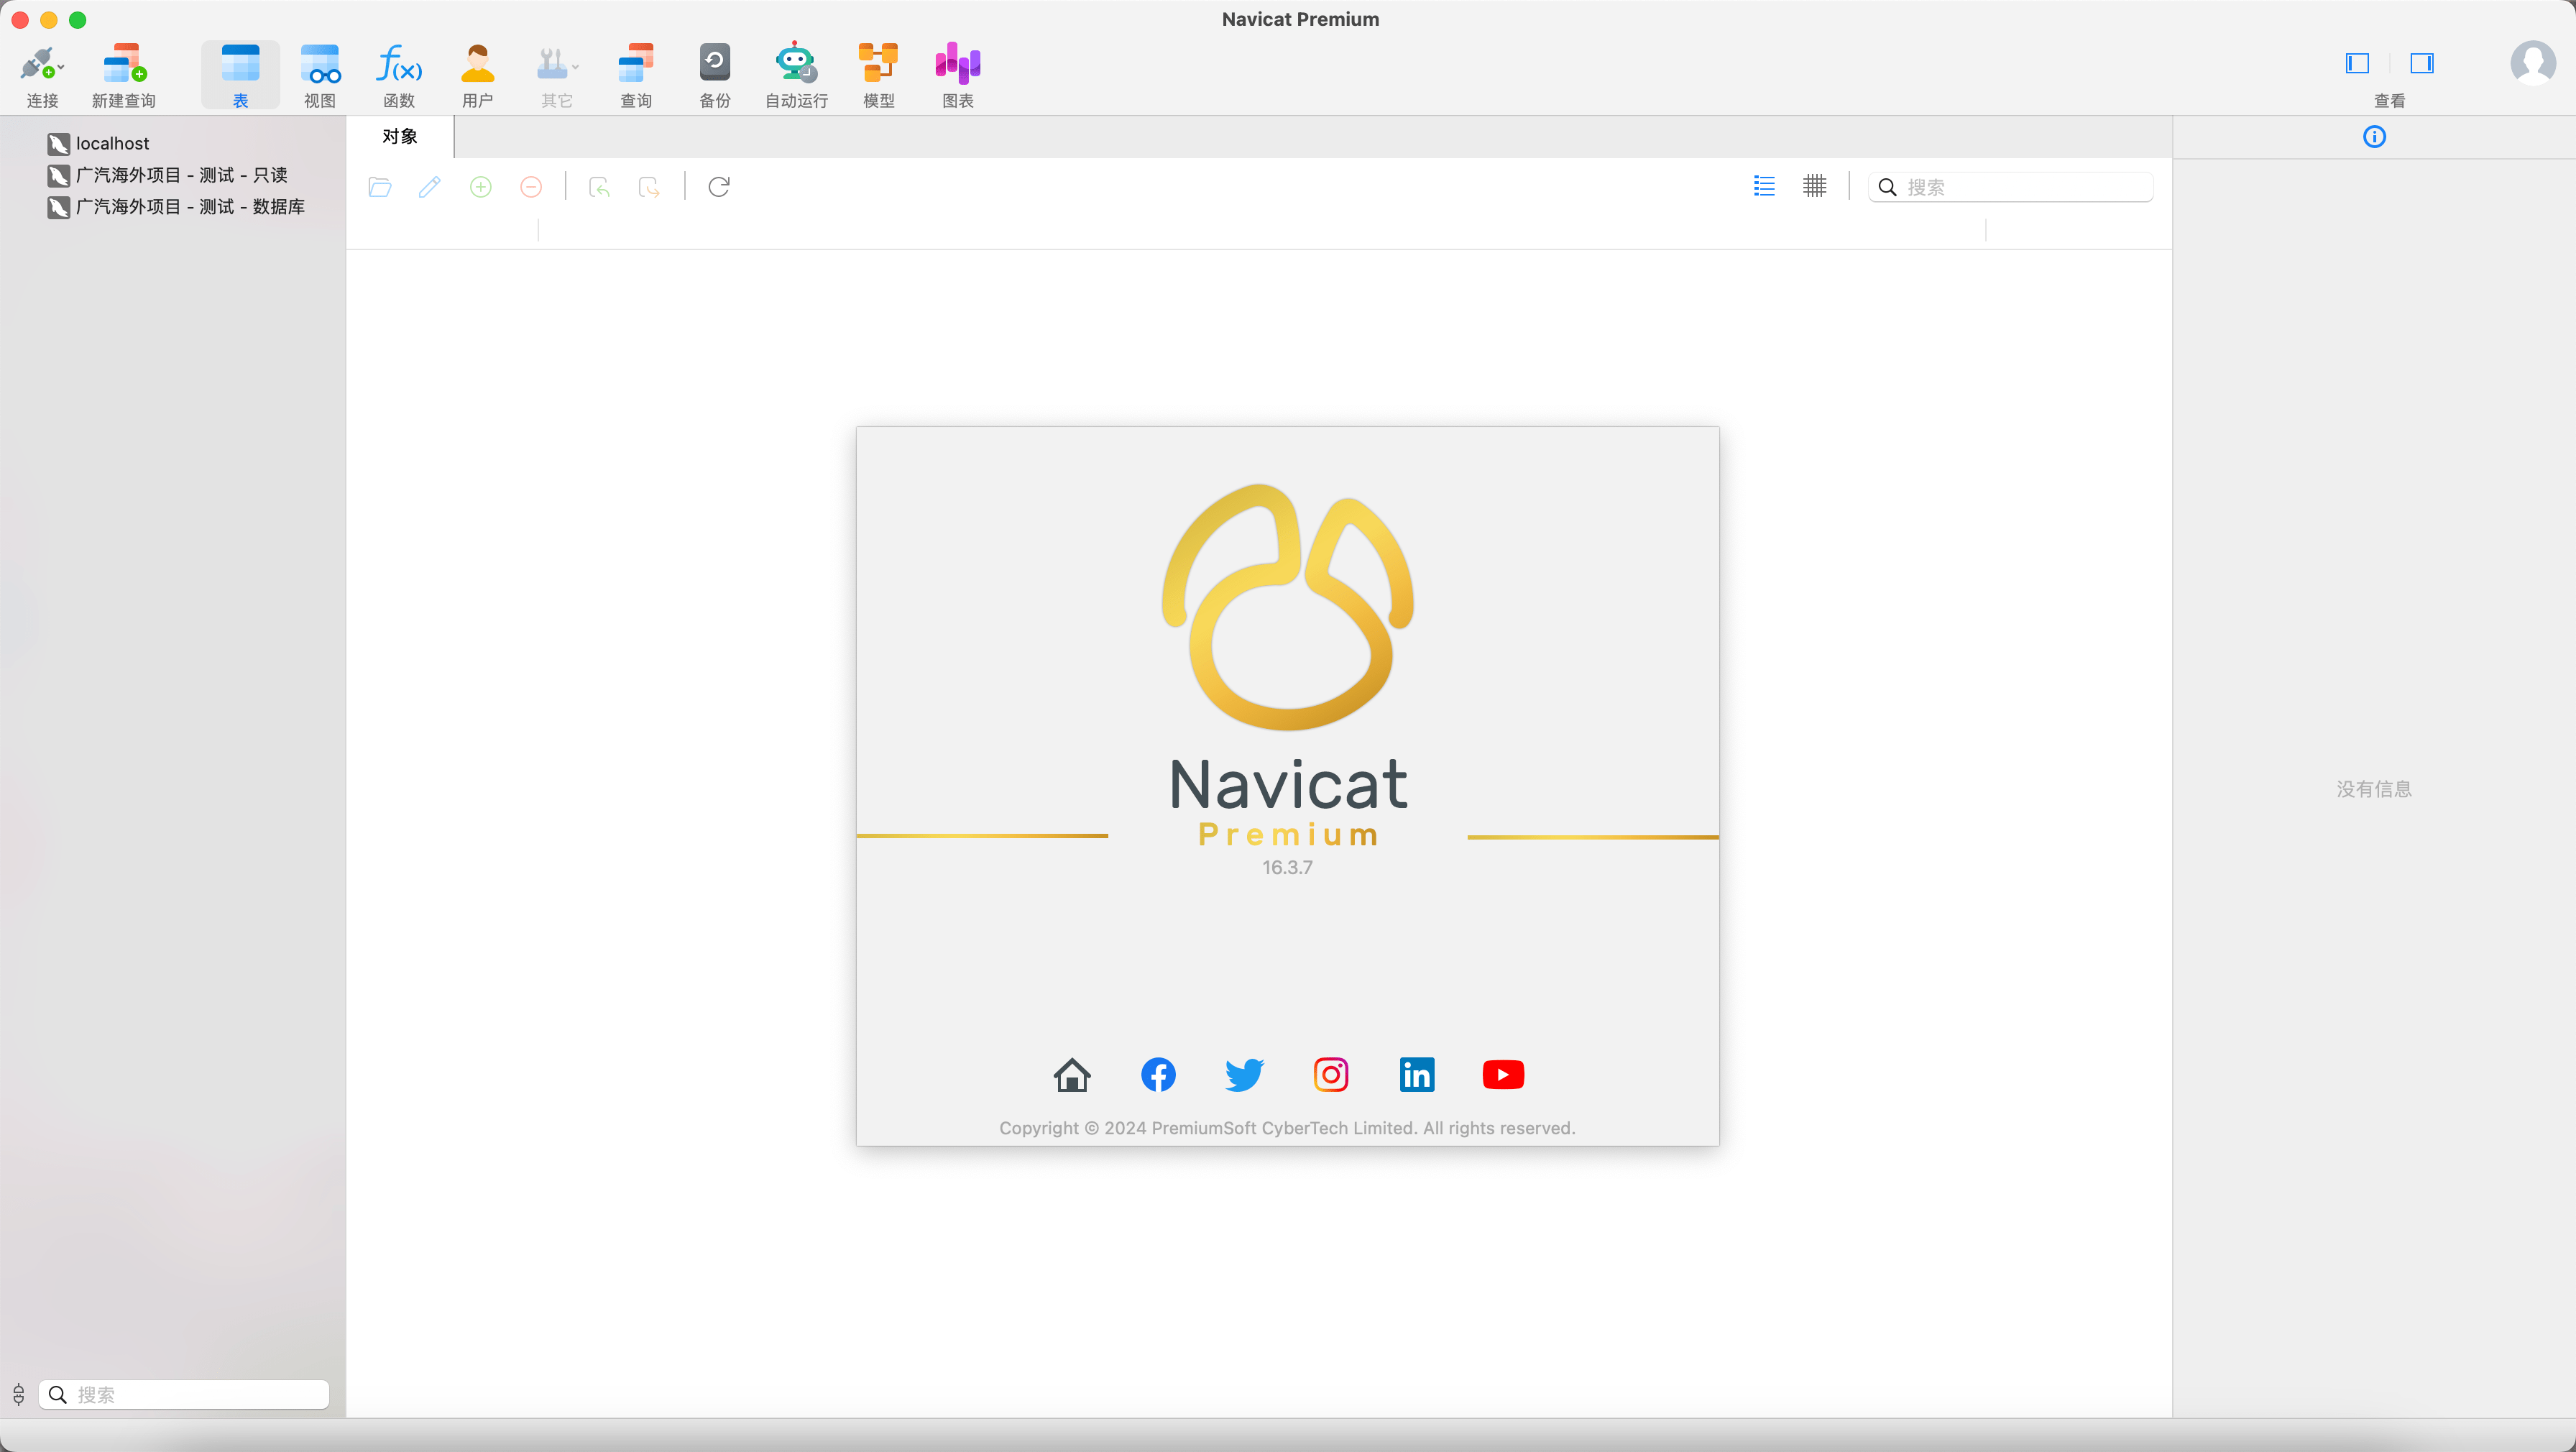 navicat 专业版 macOS 版本 16.3.7